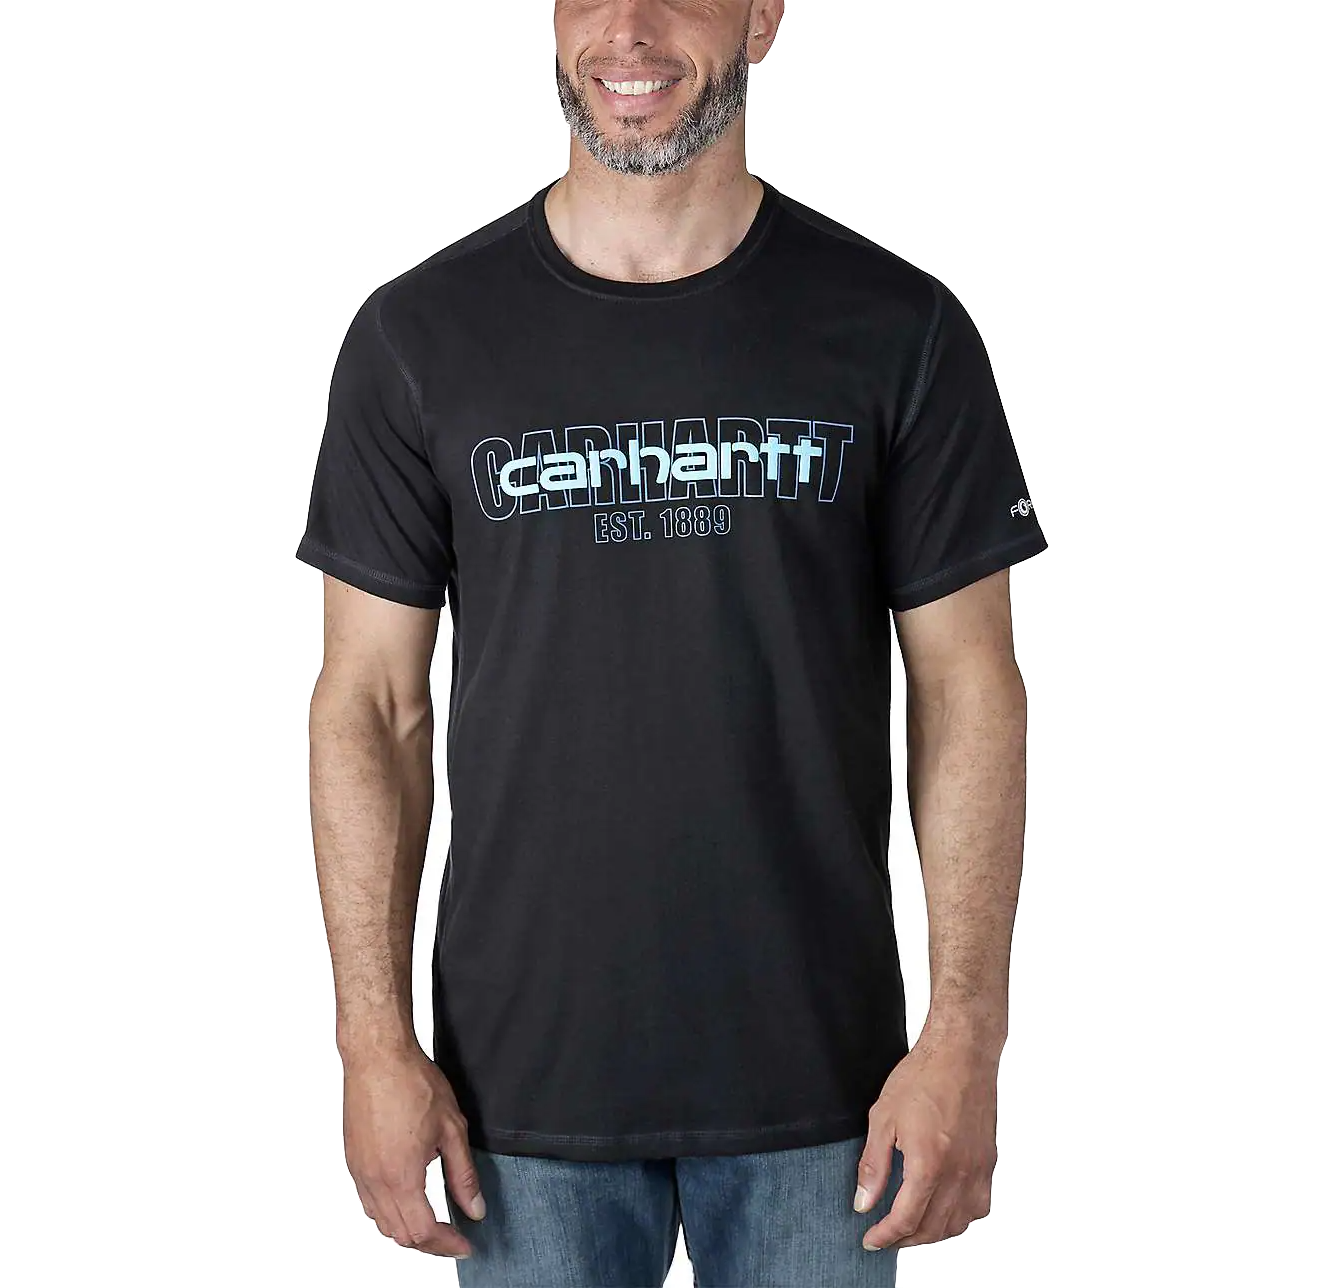 Carhartt Force Short Sleeve T-Shirt mit Carhartt Logo Graphic 106653